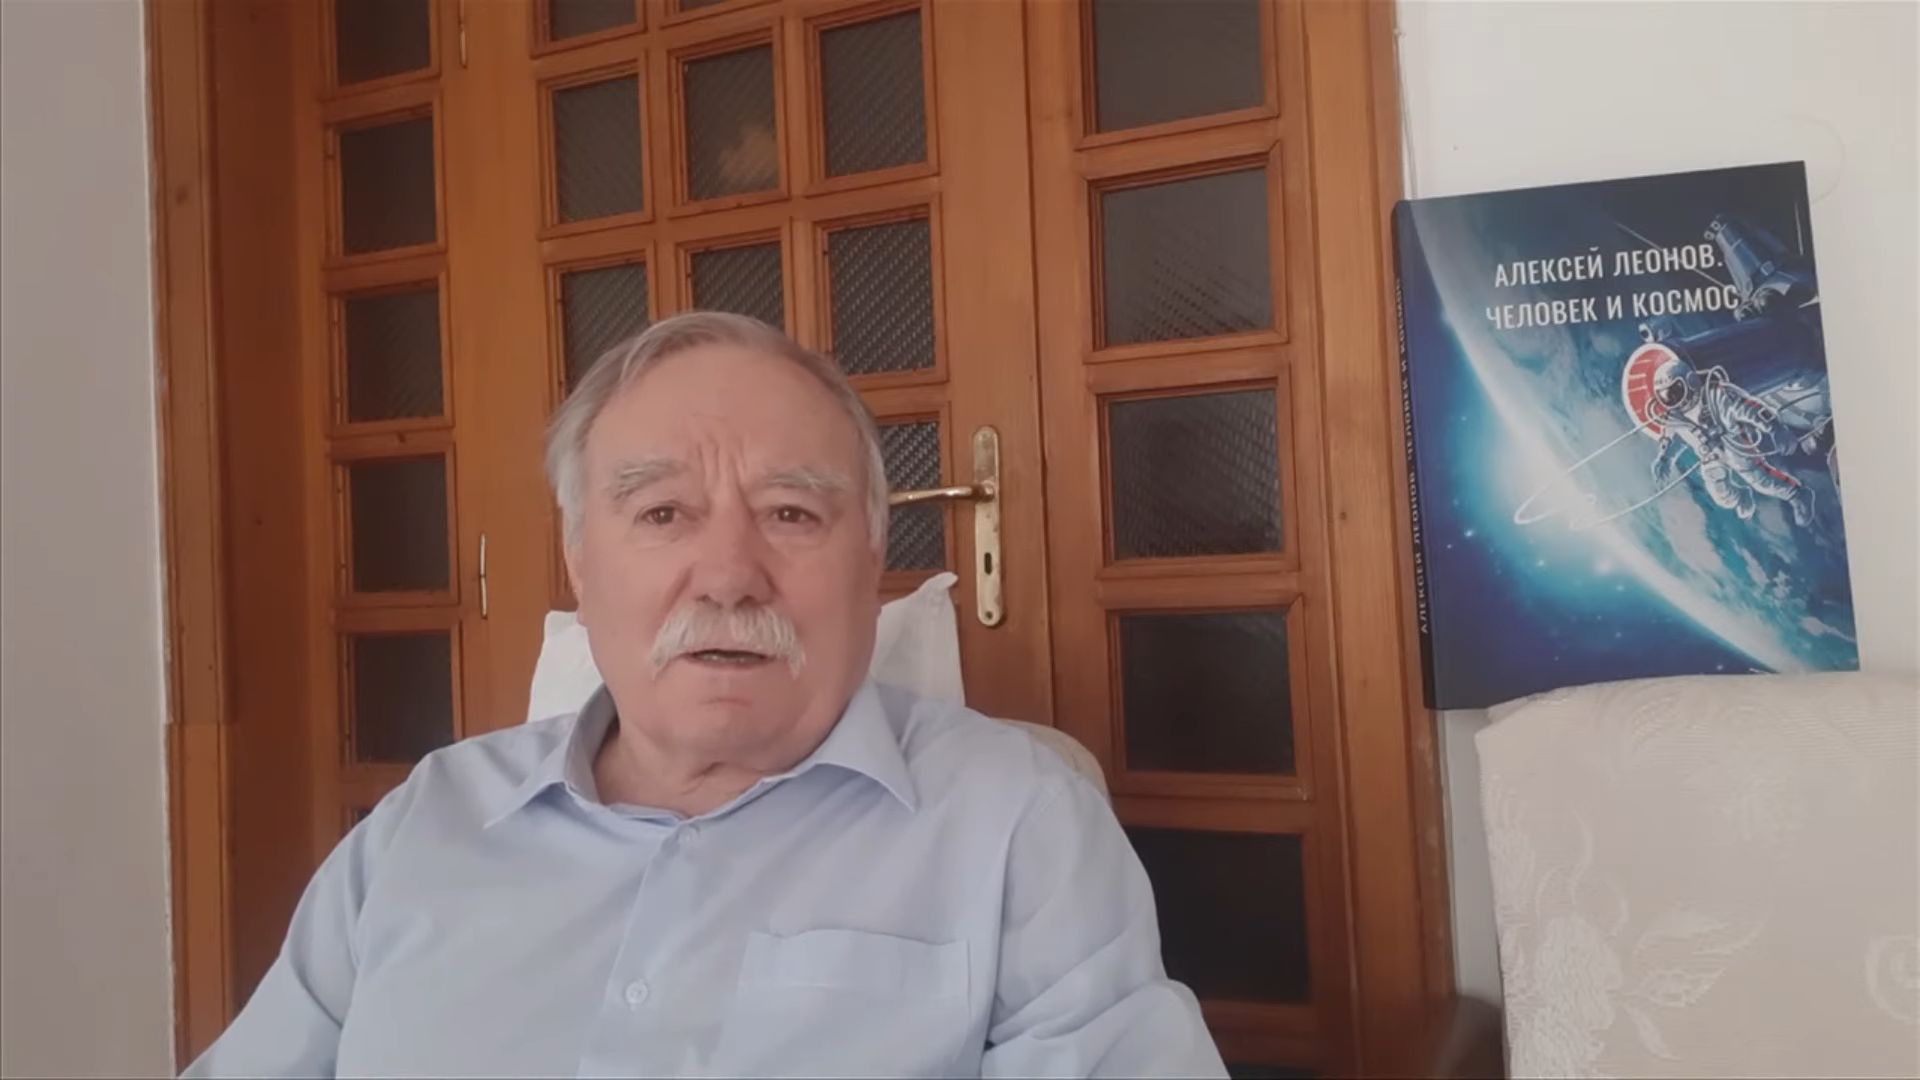 Георги Иванов, първият български космонавт, отправи послание към участниците и зретелите на събитието